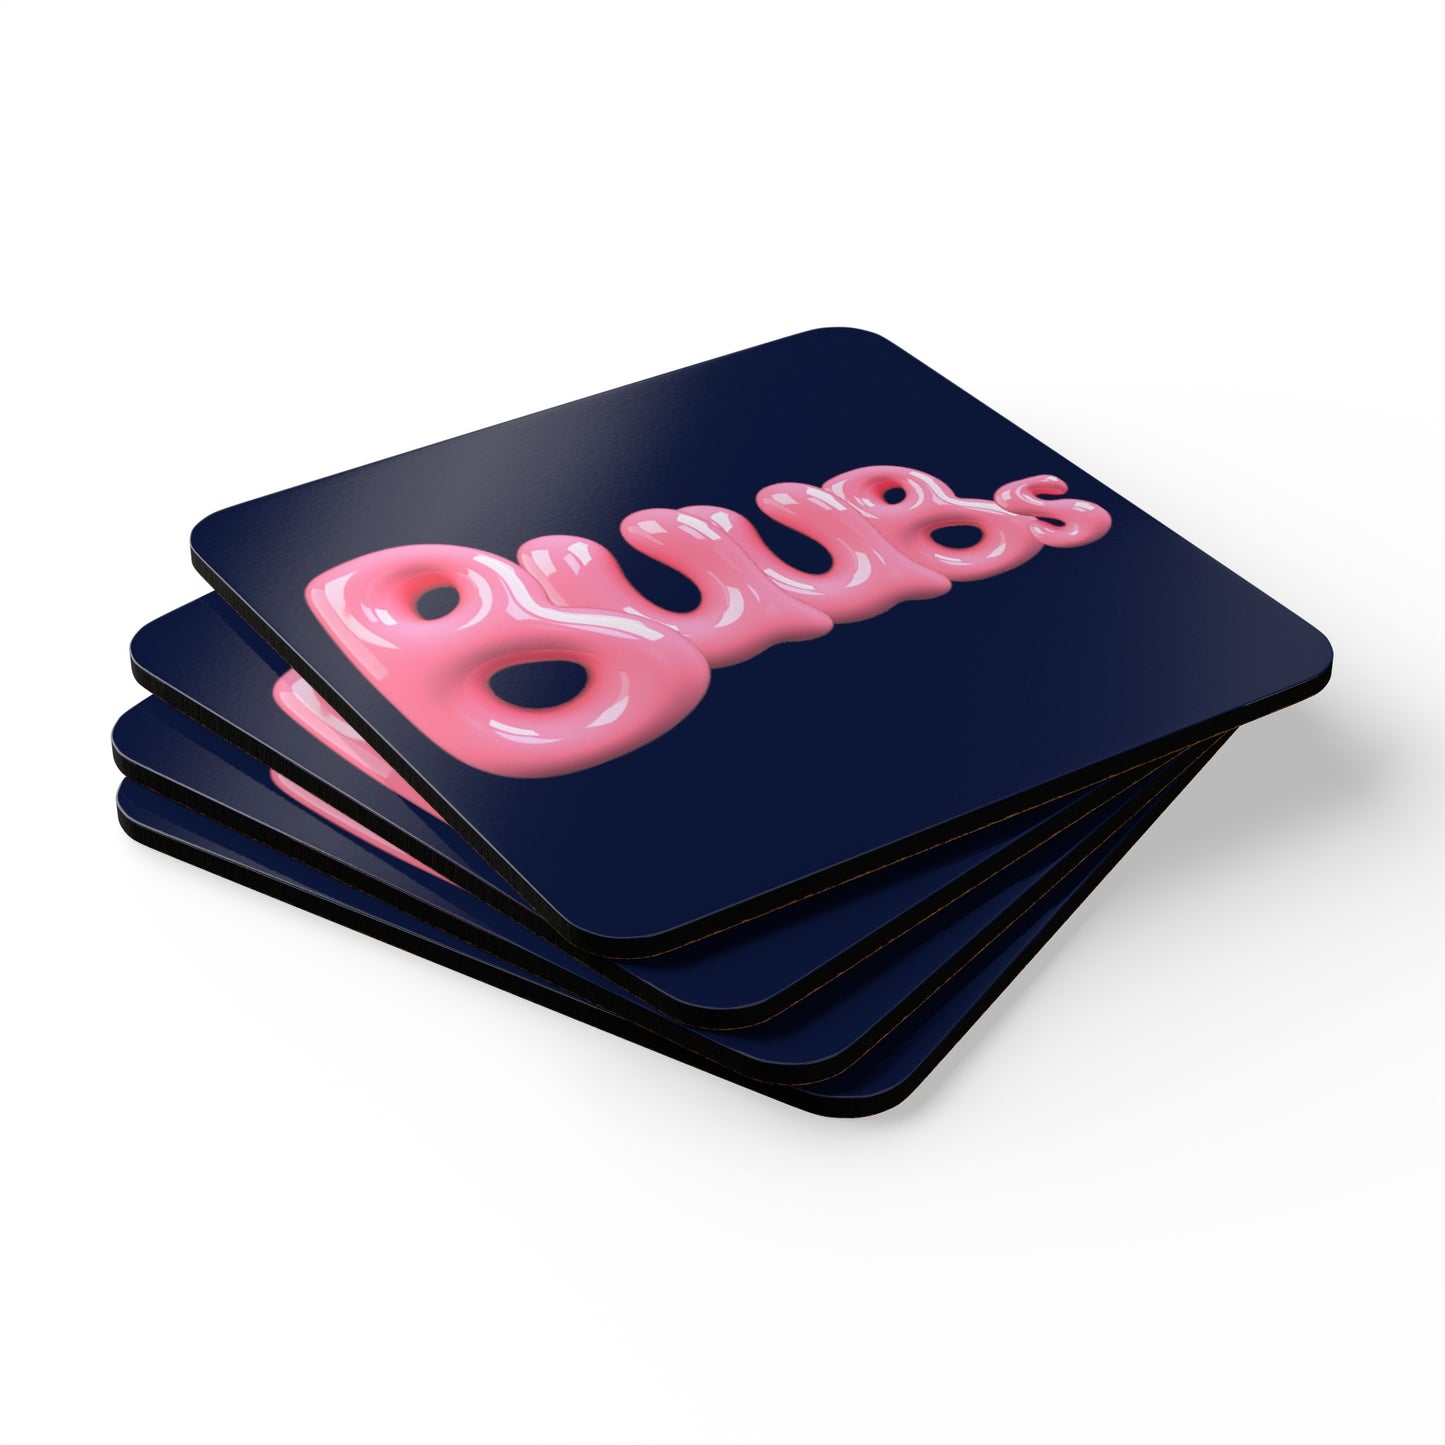 Juucie | "Buubs" Corkwood Coaster Set - Juucie